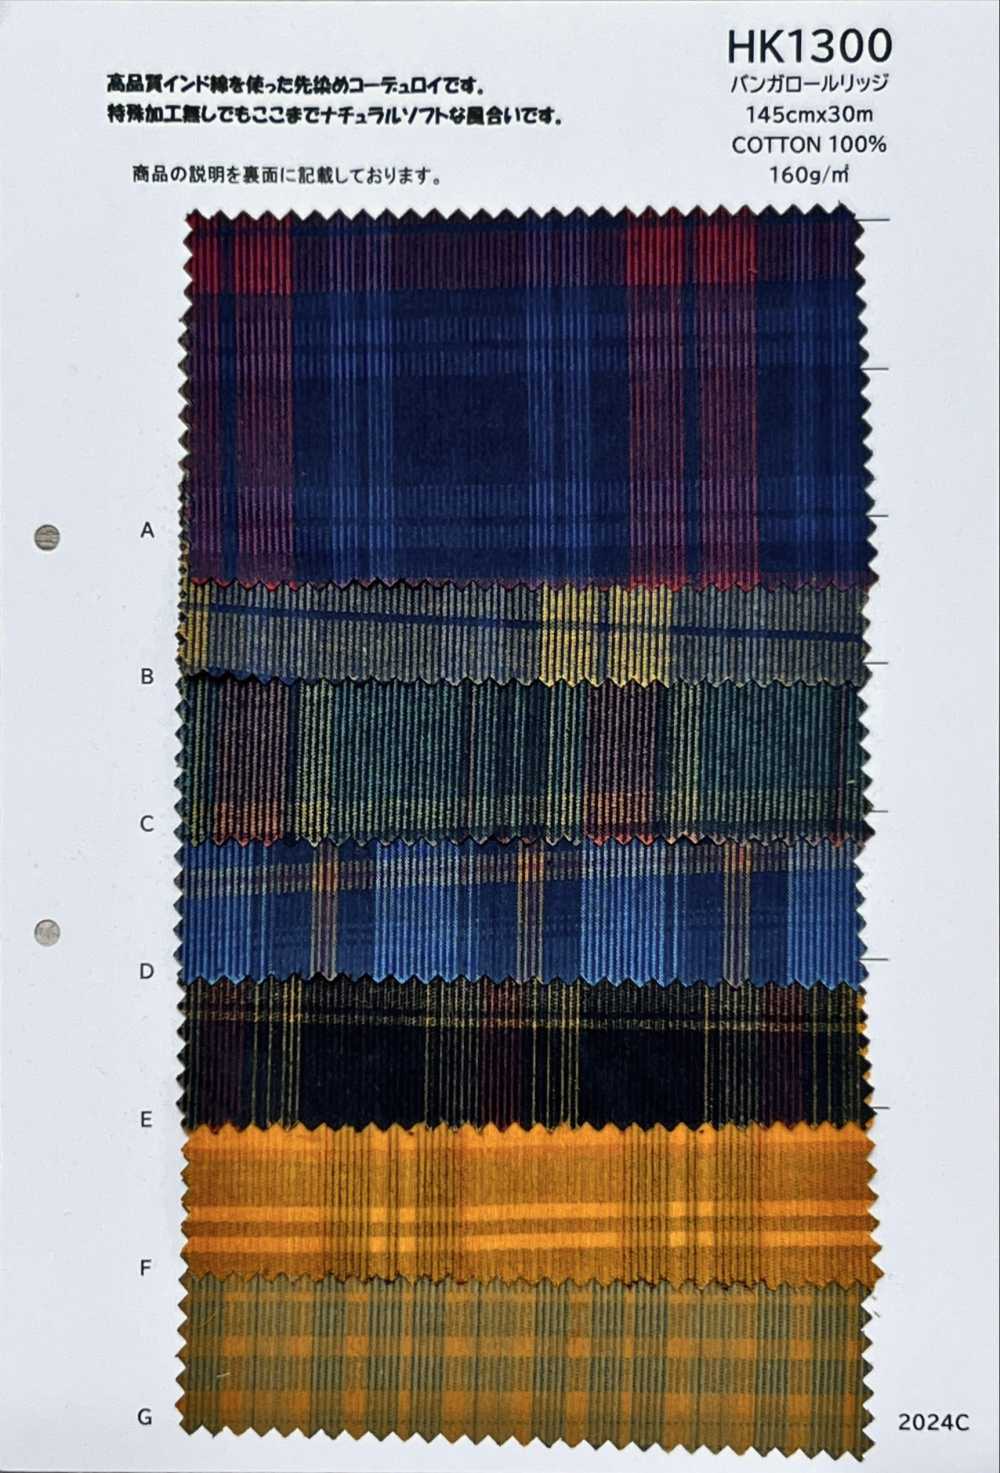 HK1300 Bangalore Ridge[Textile / Fabric] KOYAMA